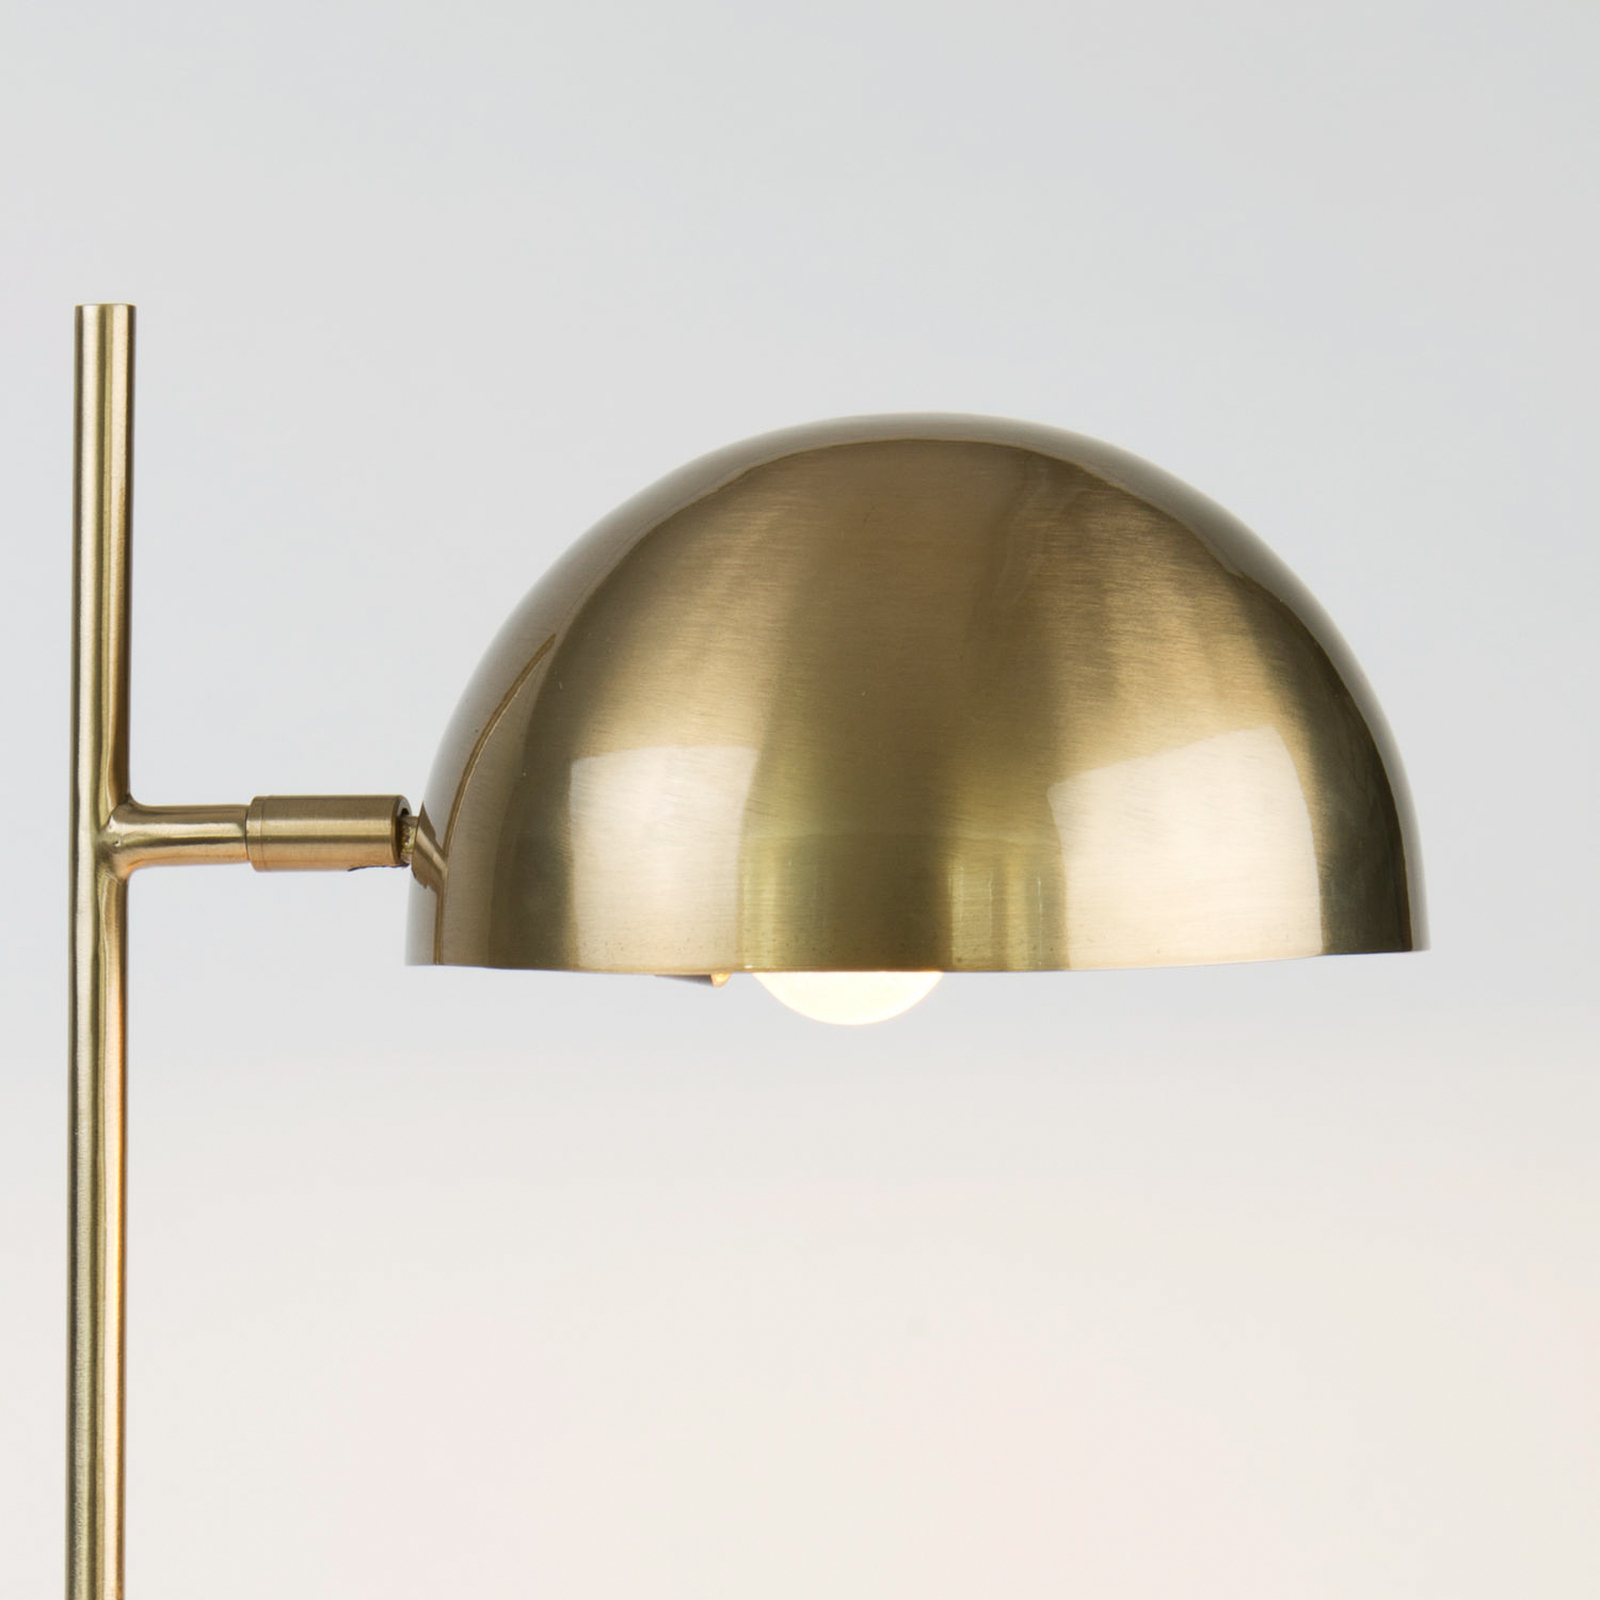 Επιτραπέζιο φωτιστικό Miro, χρυσό χρώμα, ύψος 58 cm, σίδερο/ορείχαλκο